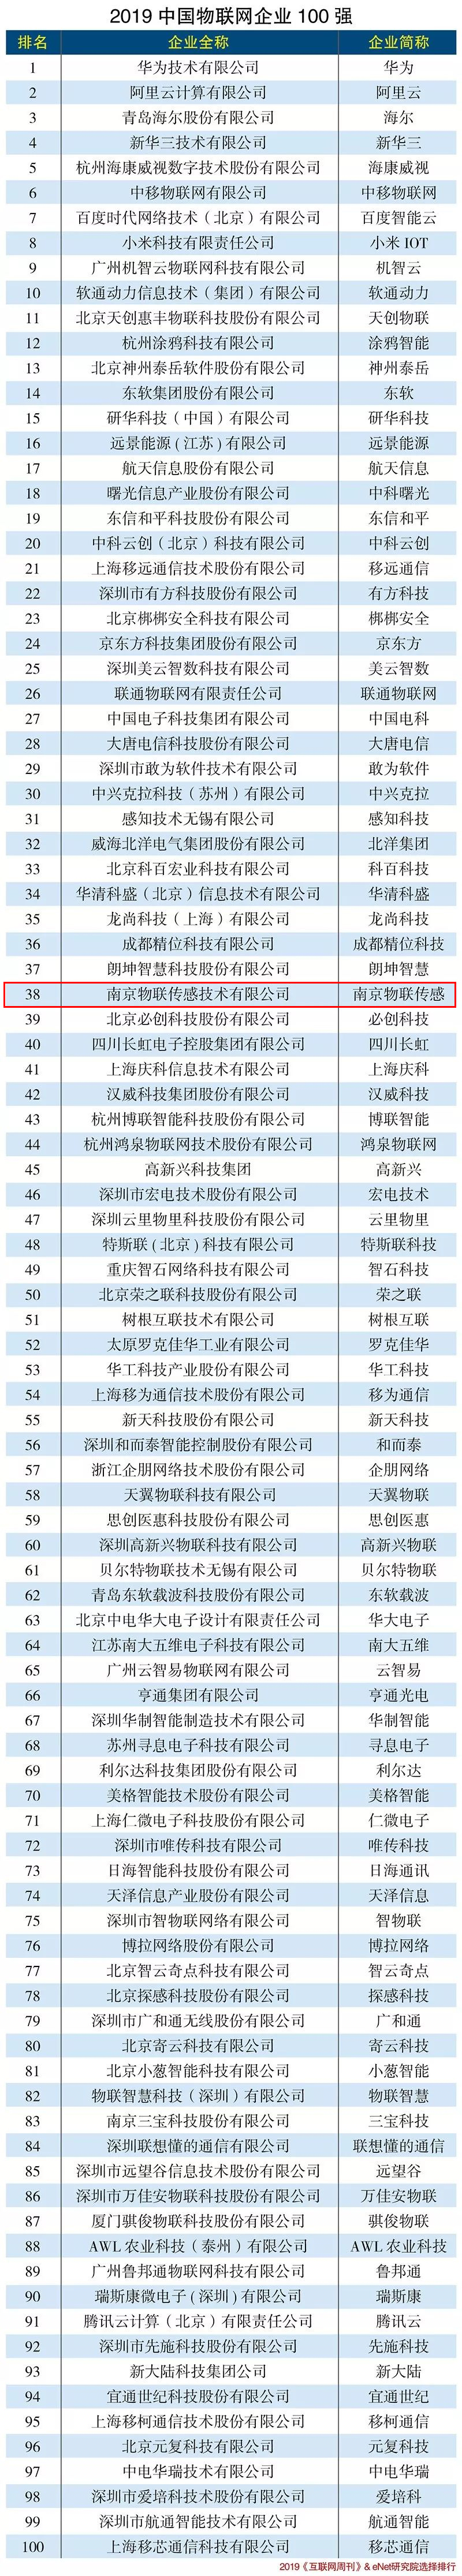 南京物联上榜2019年中国物联网企业100强